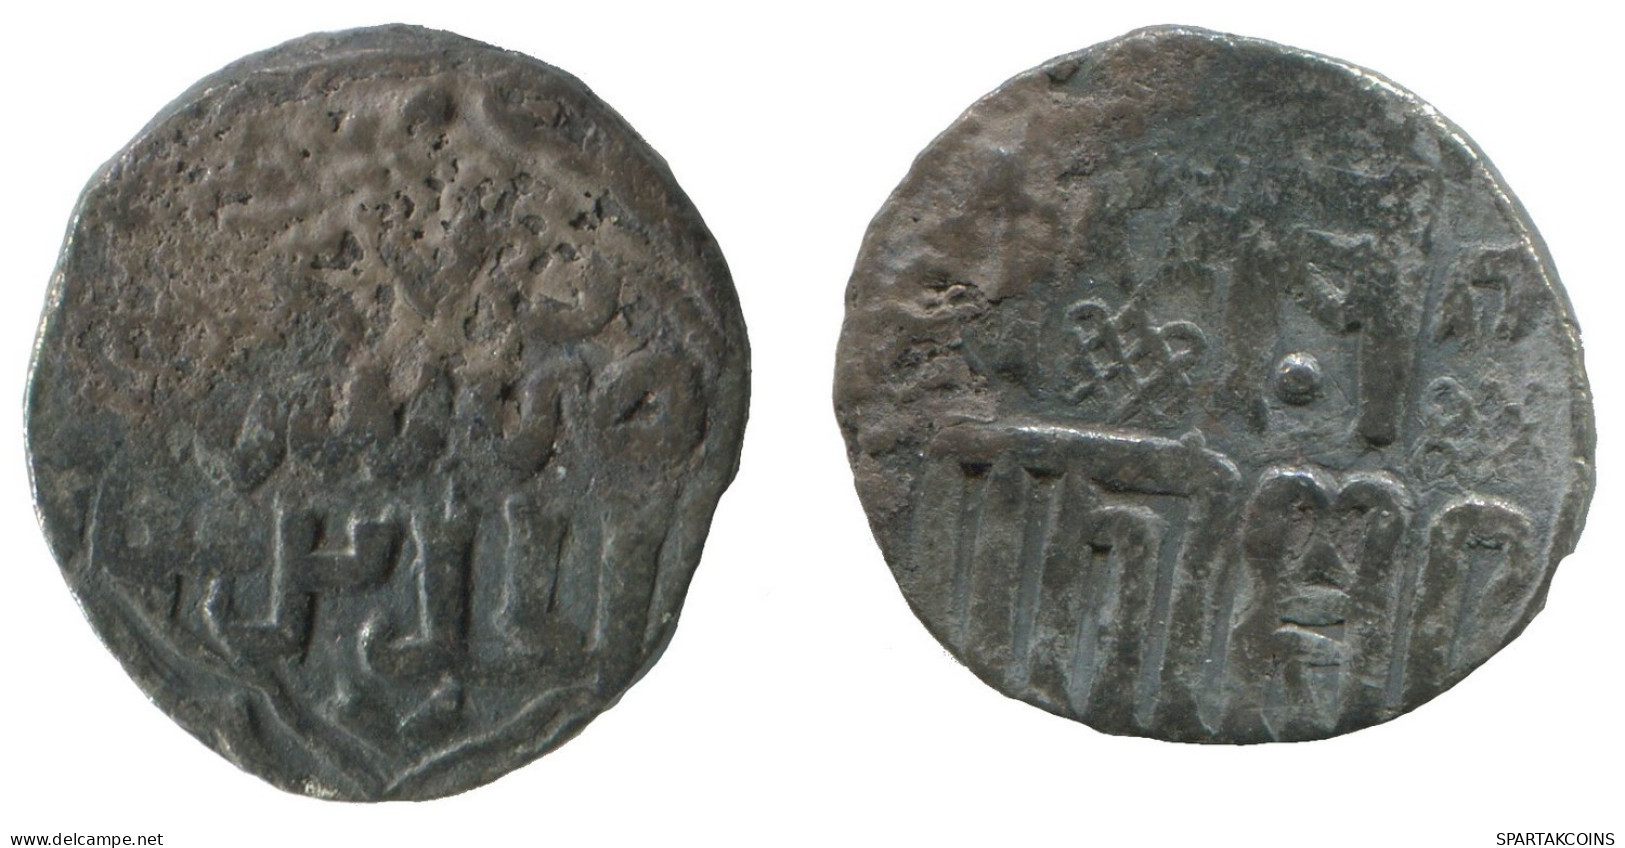 GOLDEN HORDE Silver Dirham Medieval Islamic Coin 1.5g/17mm #NNN2003.8.U.A - Islamiche